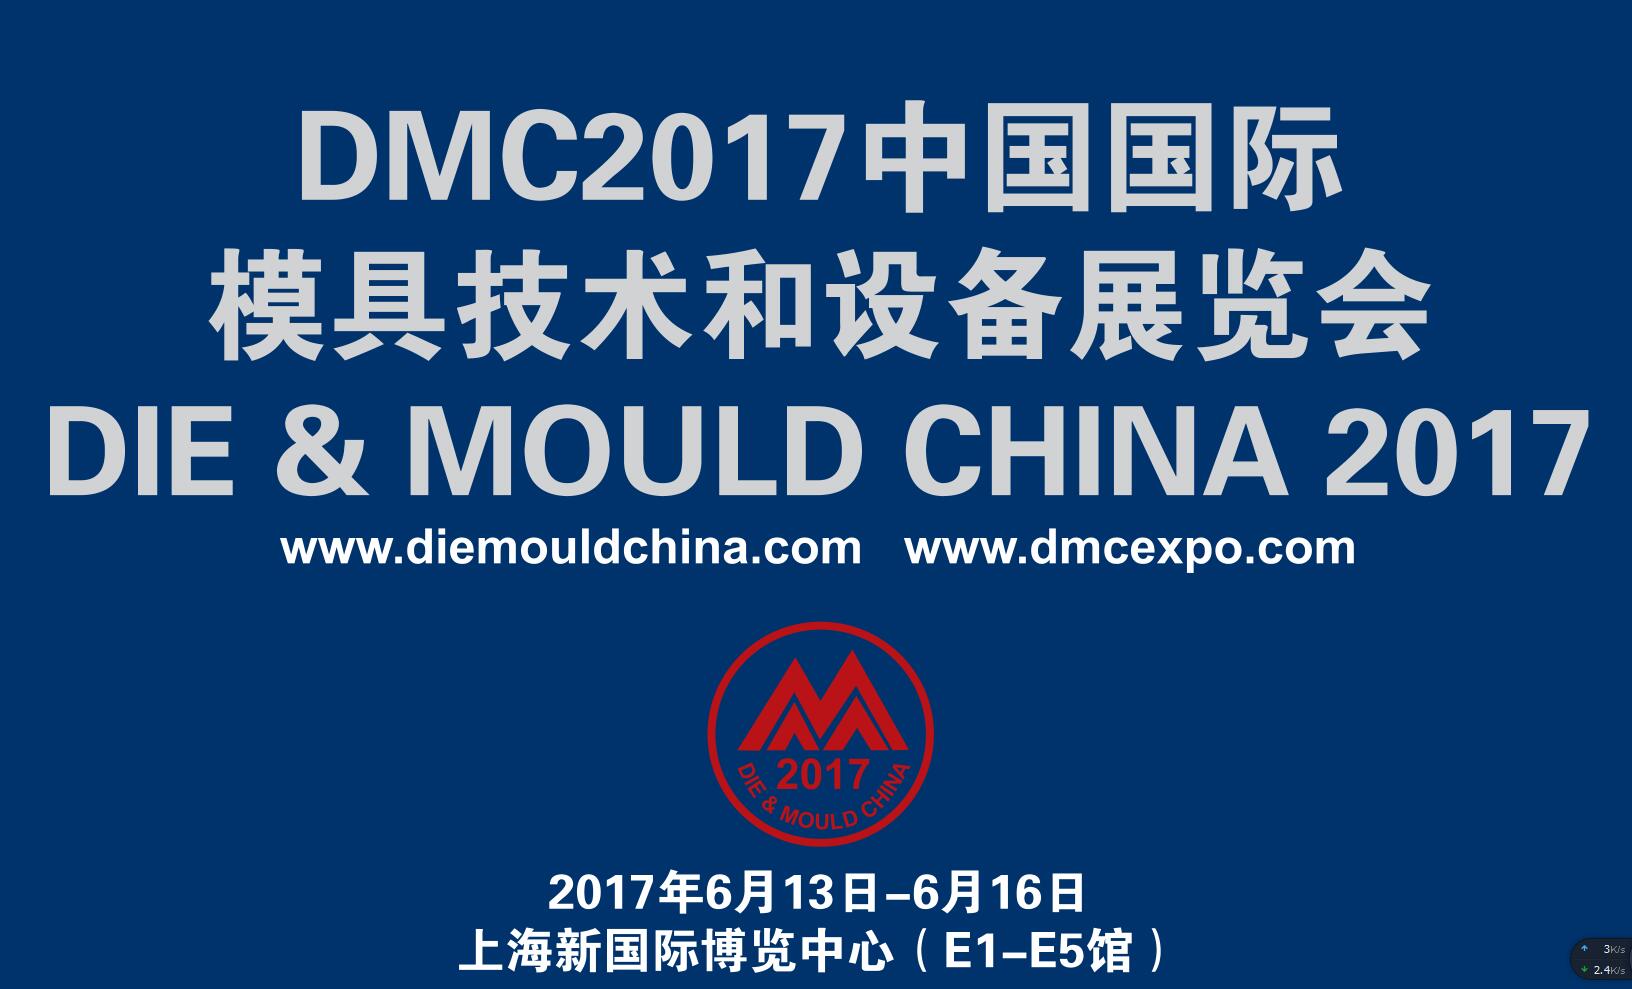 我公司将要参加2017中国国际模具技术和设备展览会